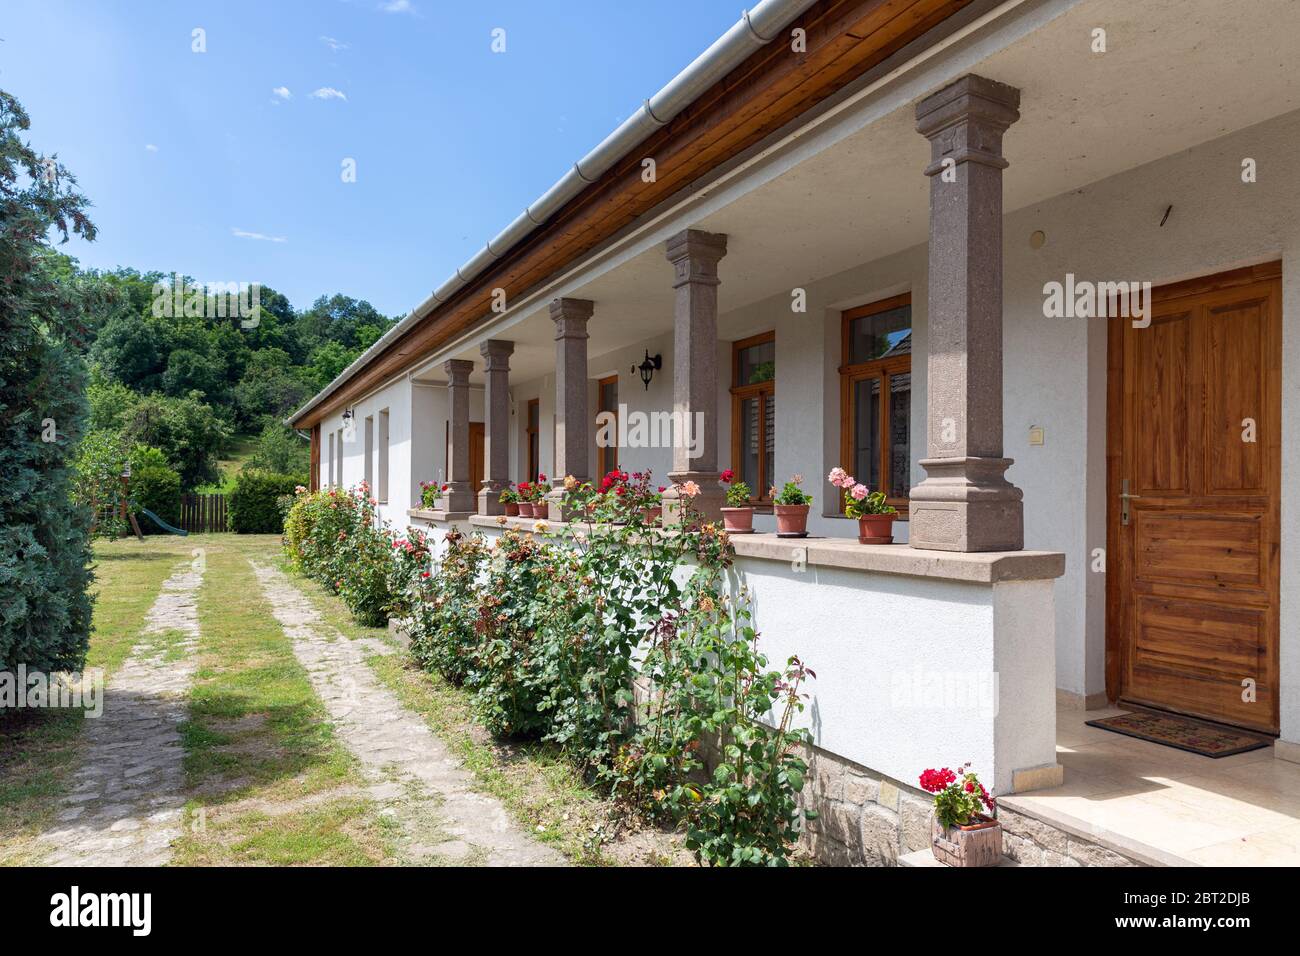 Holiday house with veranda in village Szomolya near Eger, Hungary Stock Photo